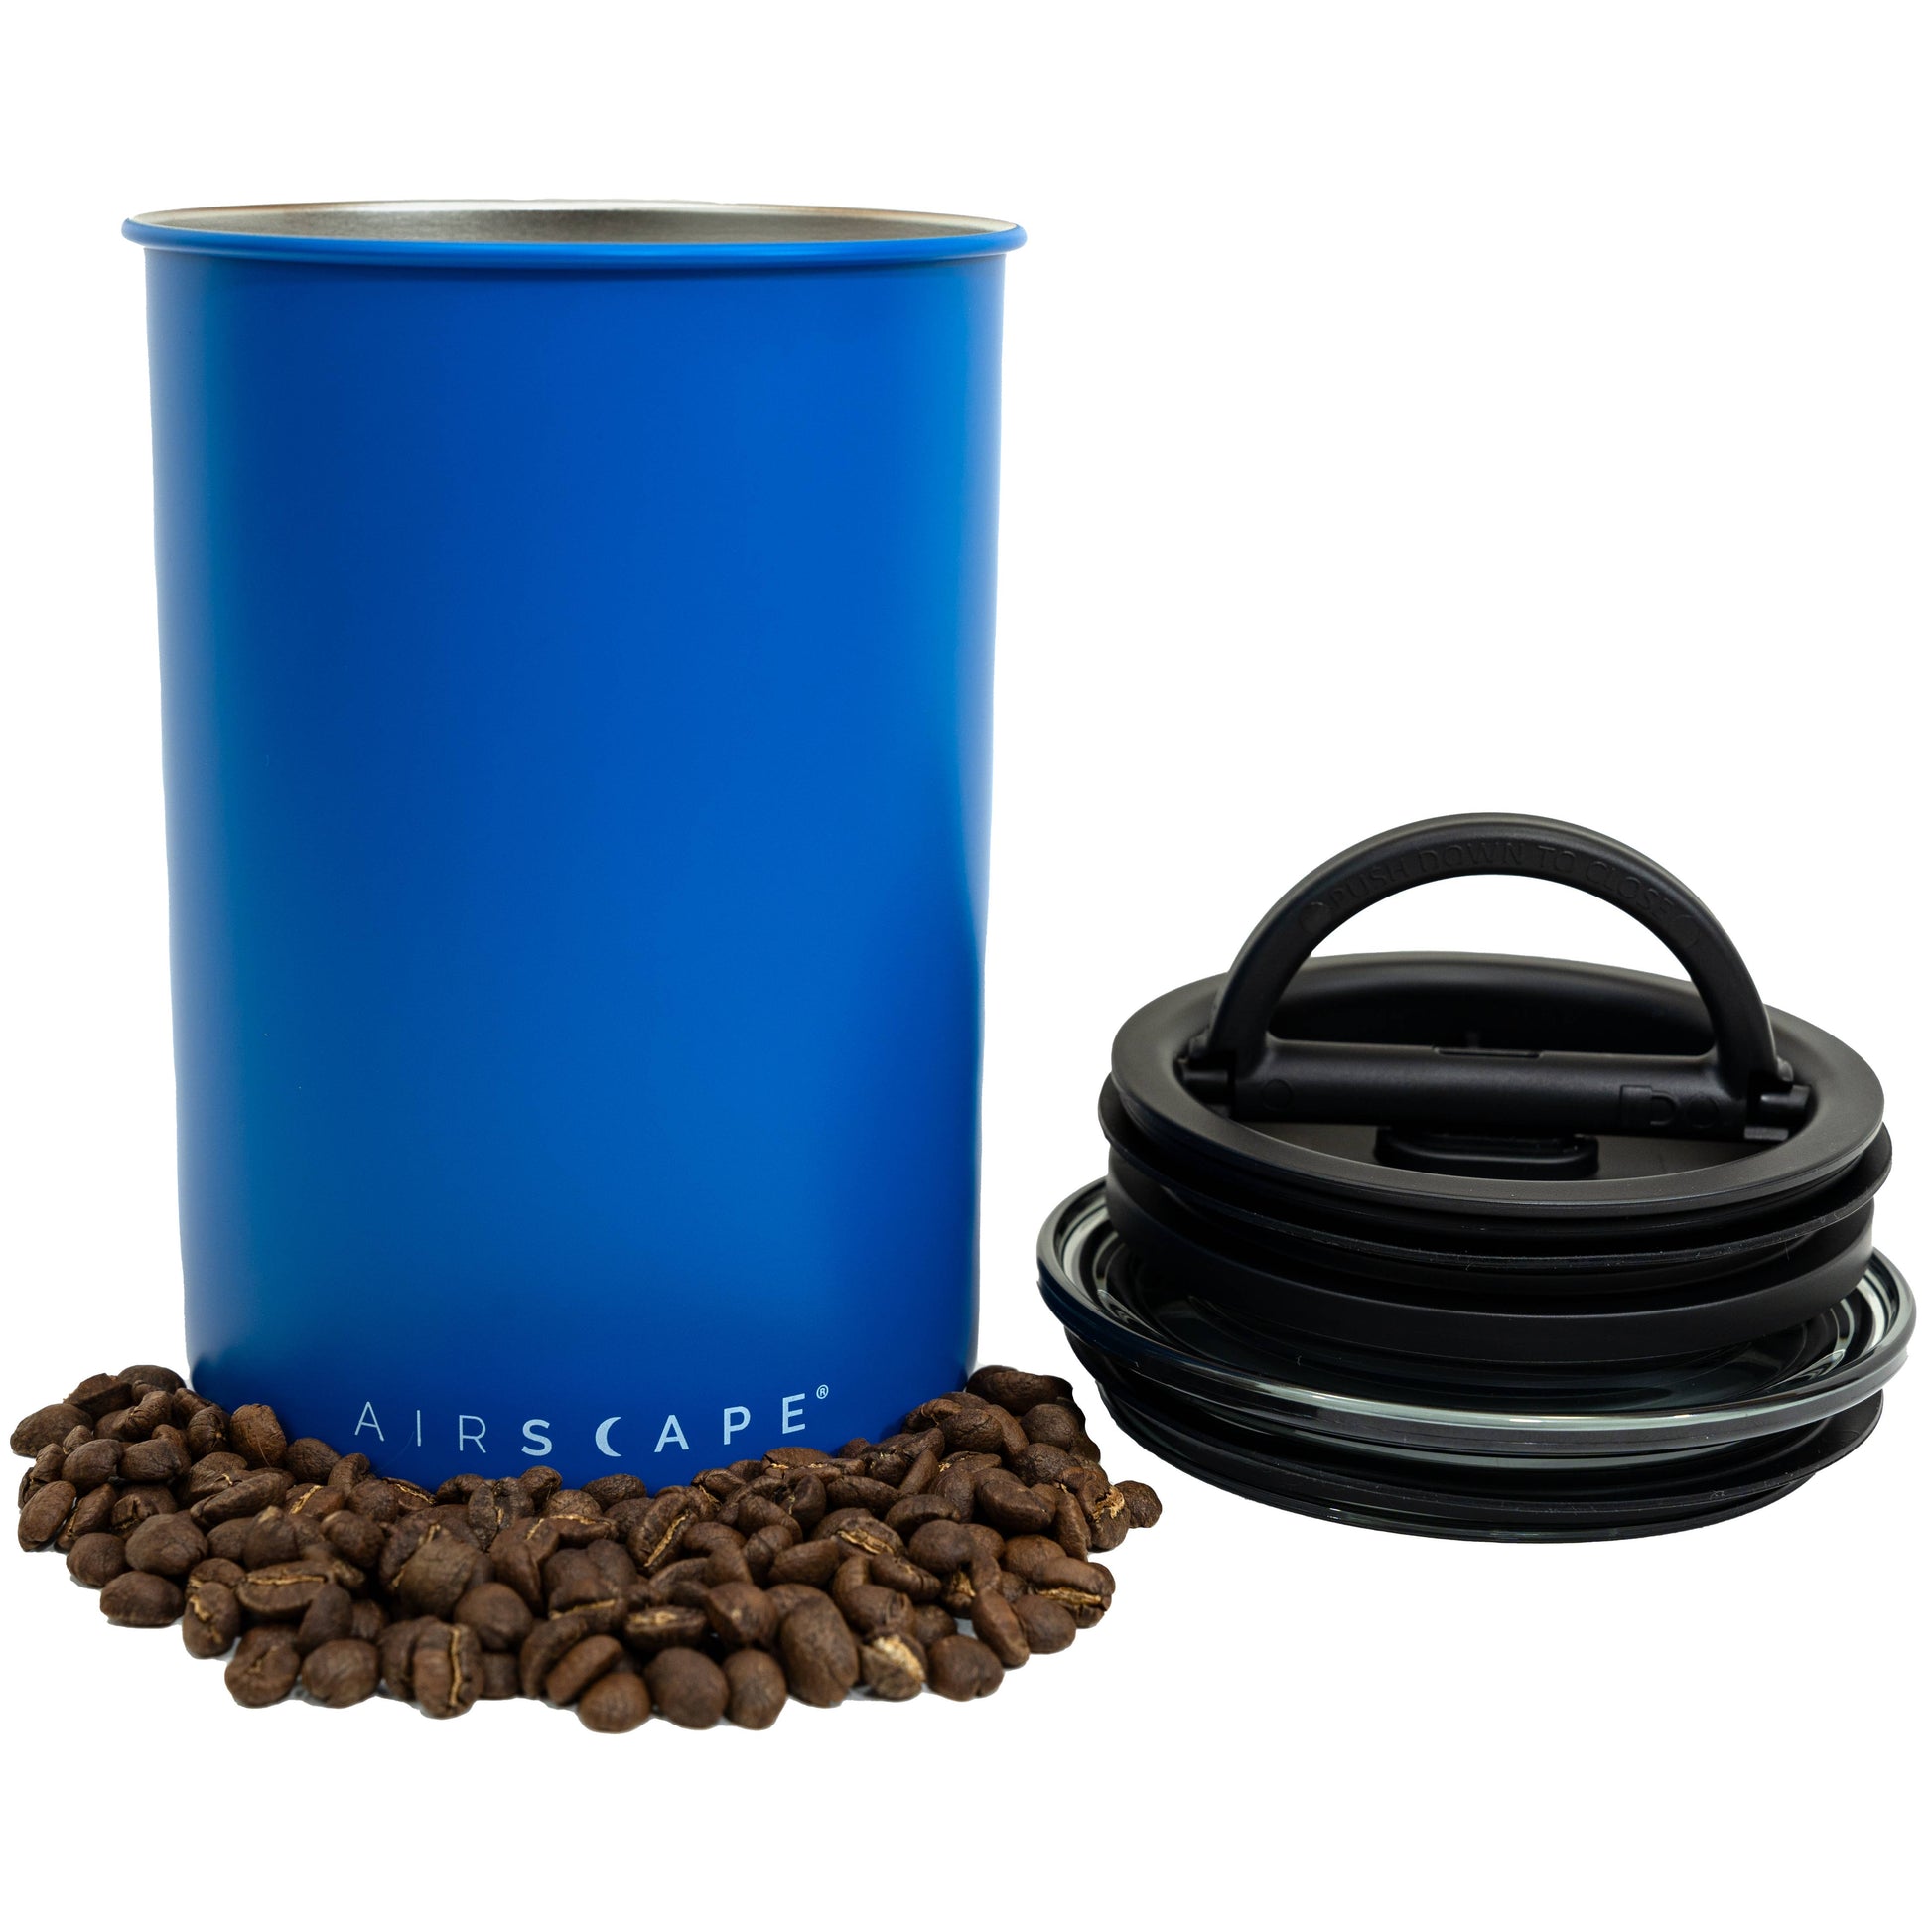 Airscape 500g Blau Edelstahl luftdichter Aufbewahrungsbehälter - Coffee Coaching Club